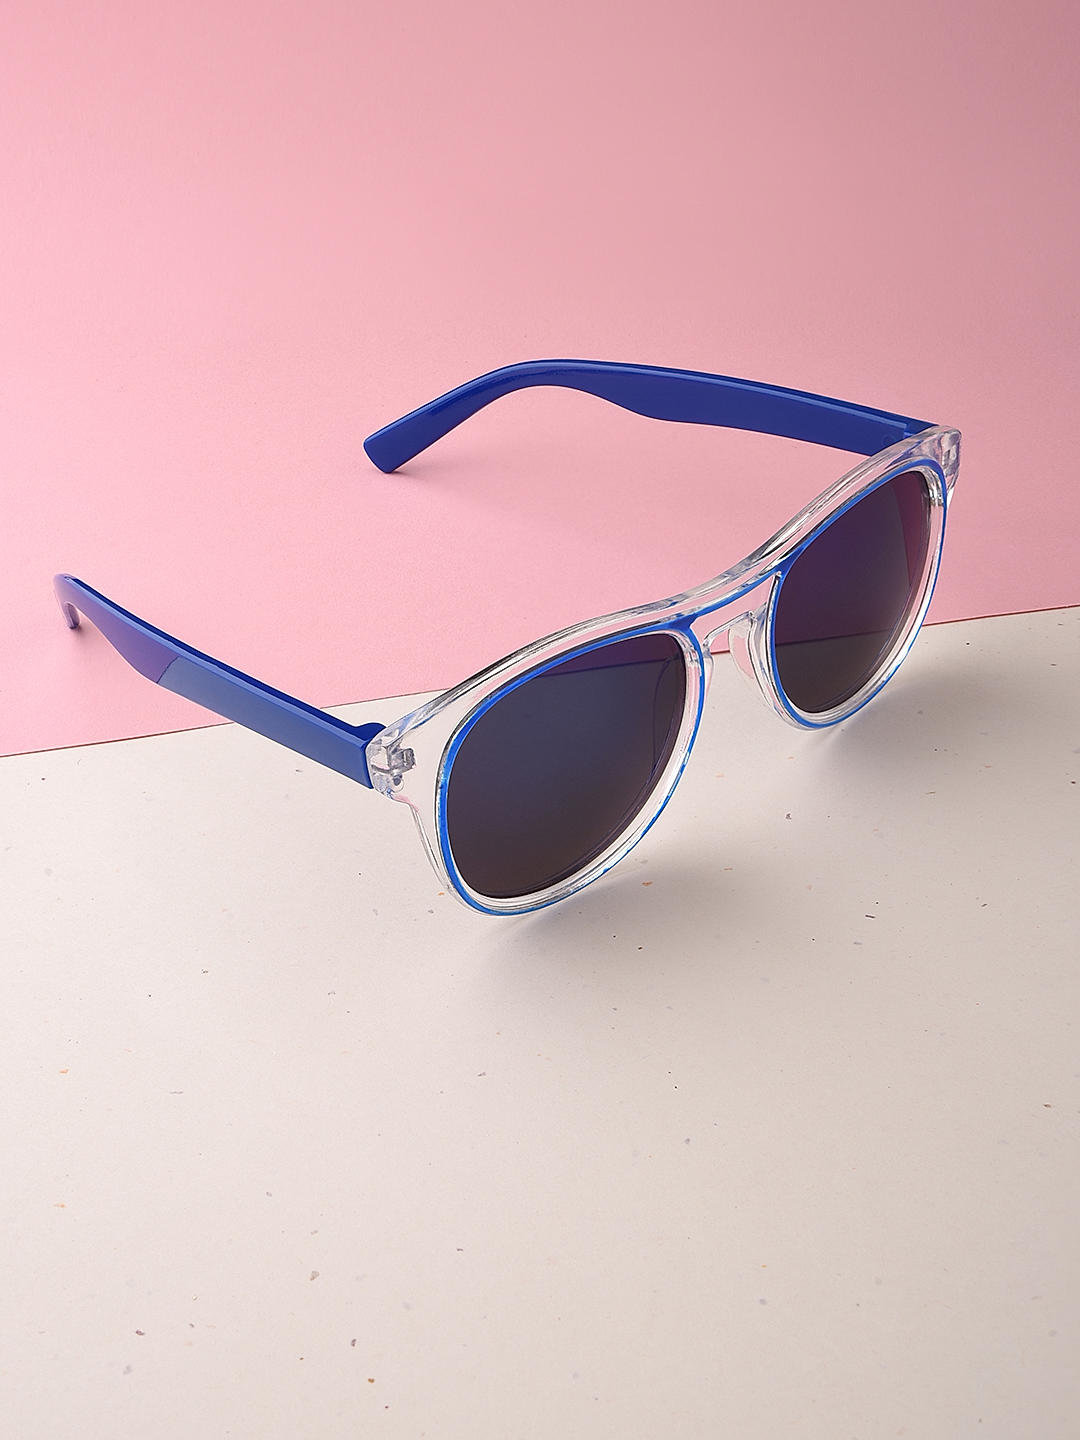 Stylish Unisex Blue Sunglasses